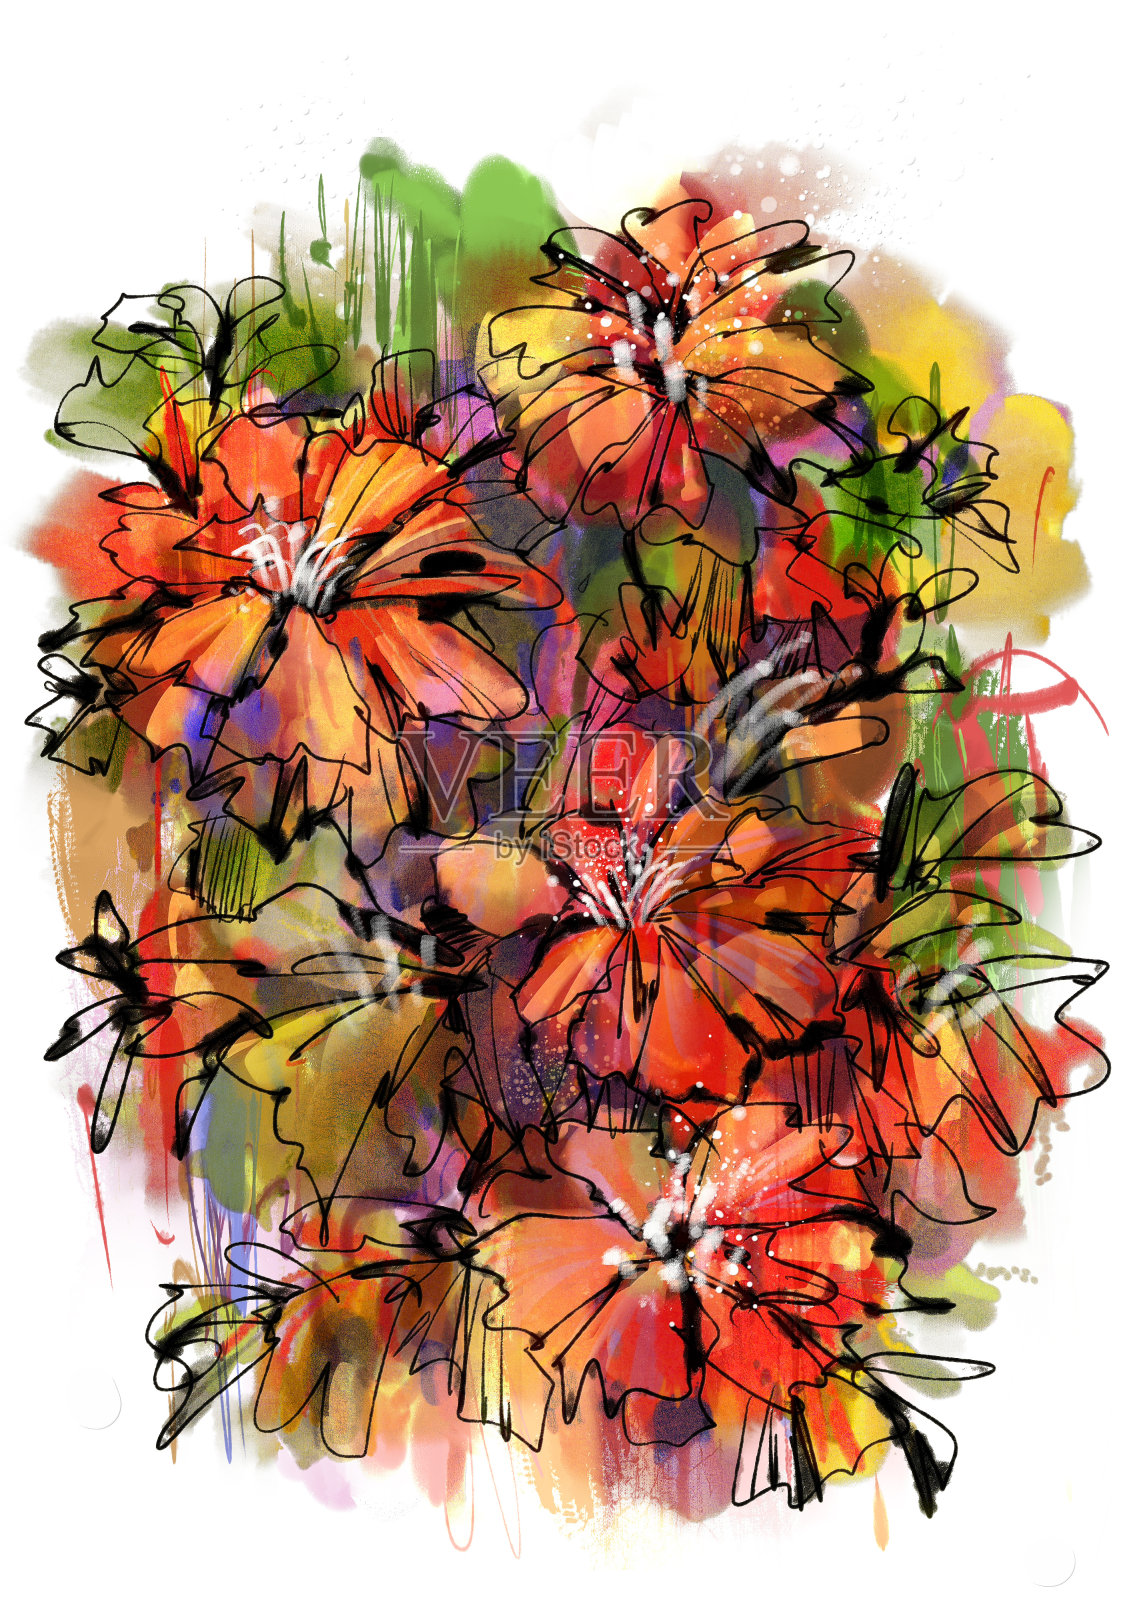 色彩丰富的抽象花卉水彩风格插画图片素材